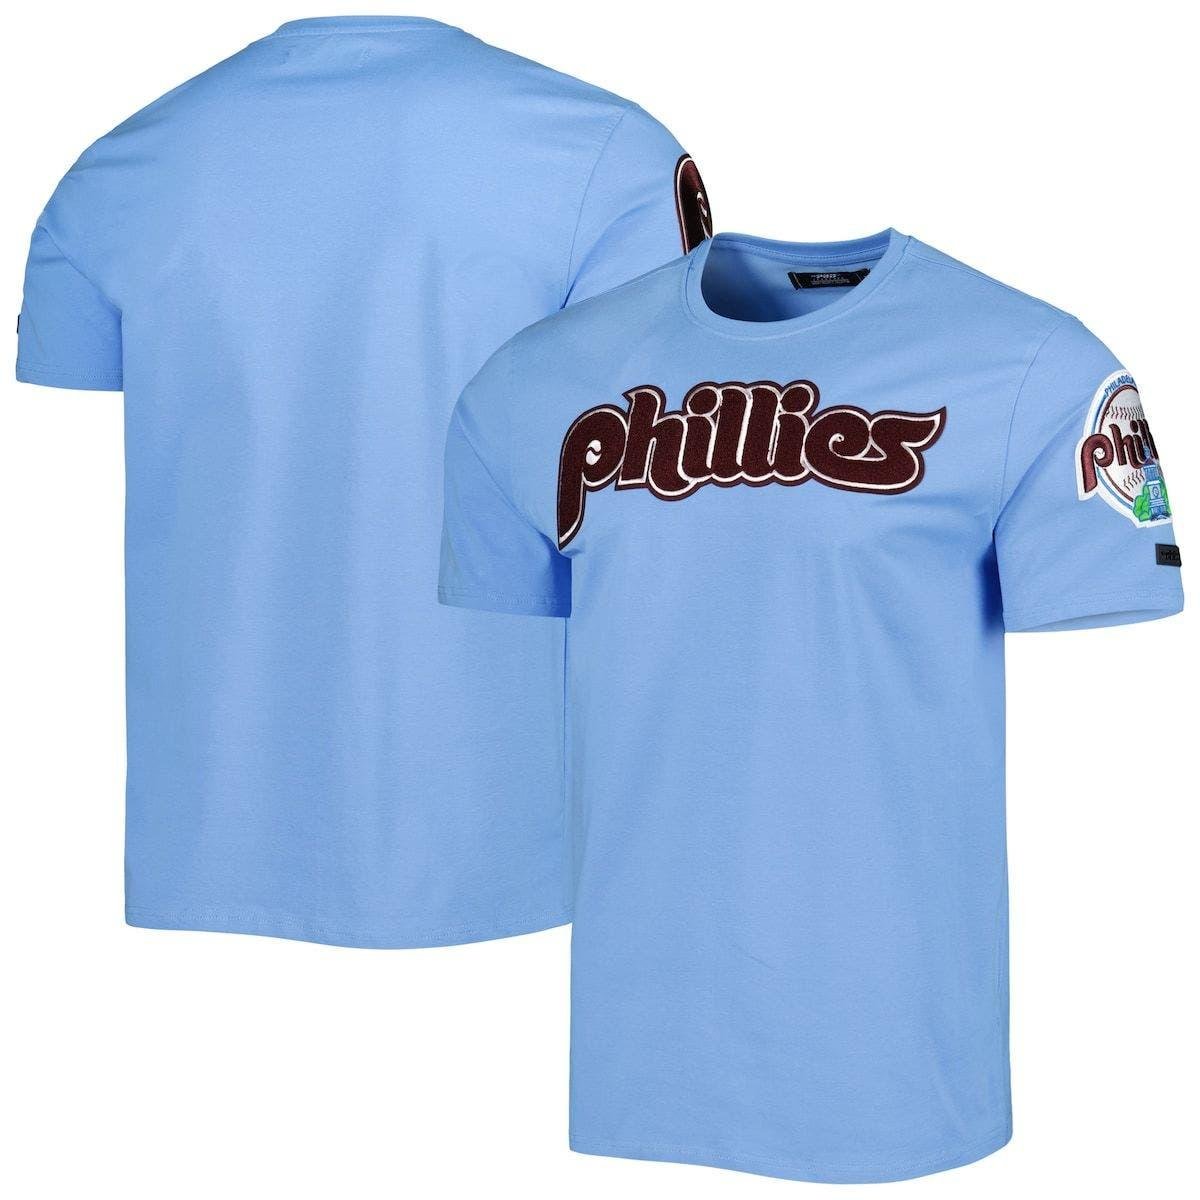 blue phillies t shirt